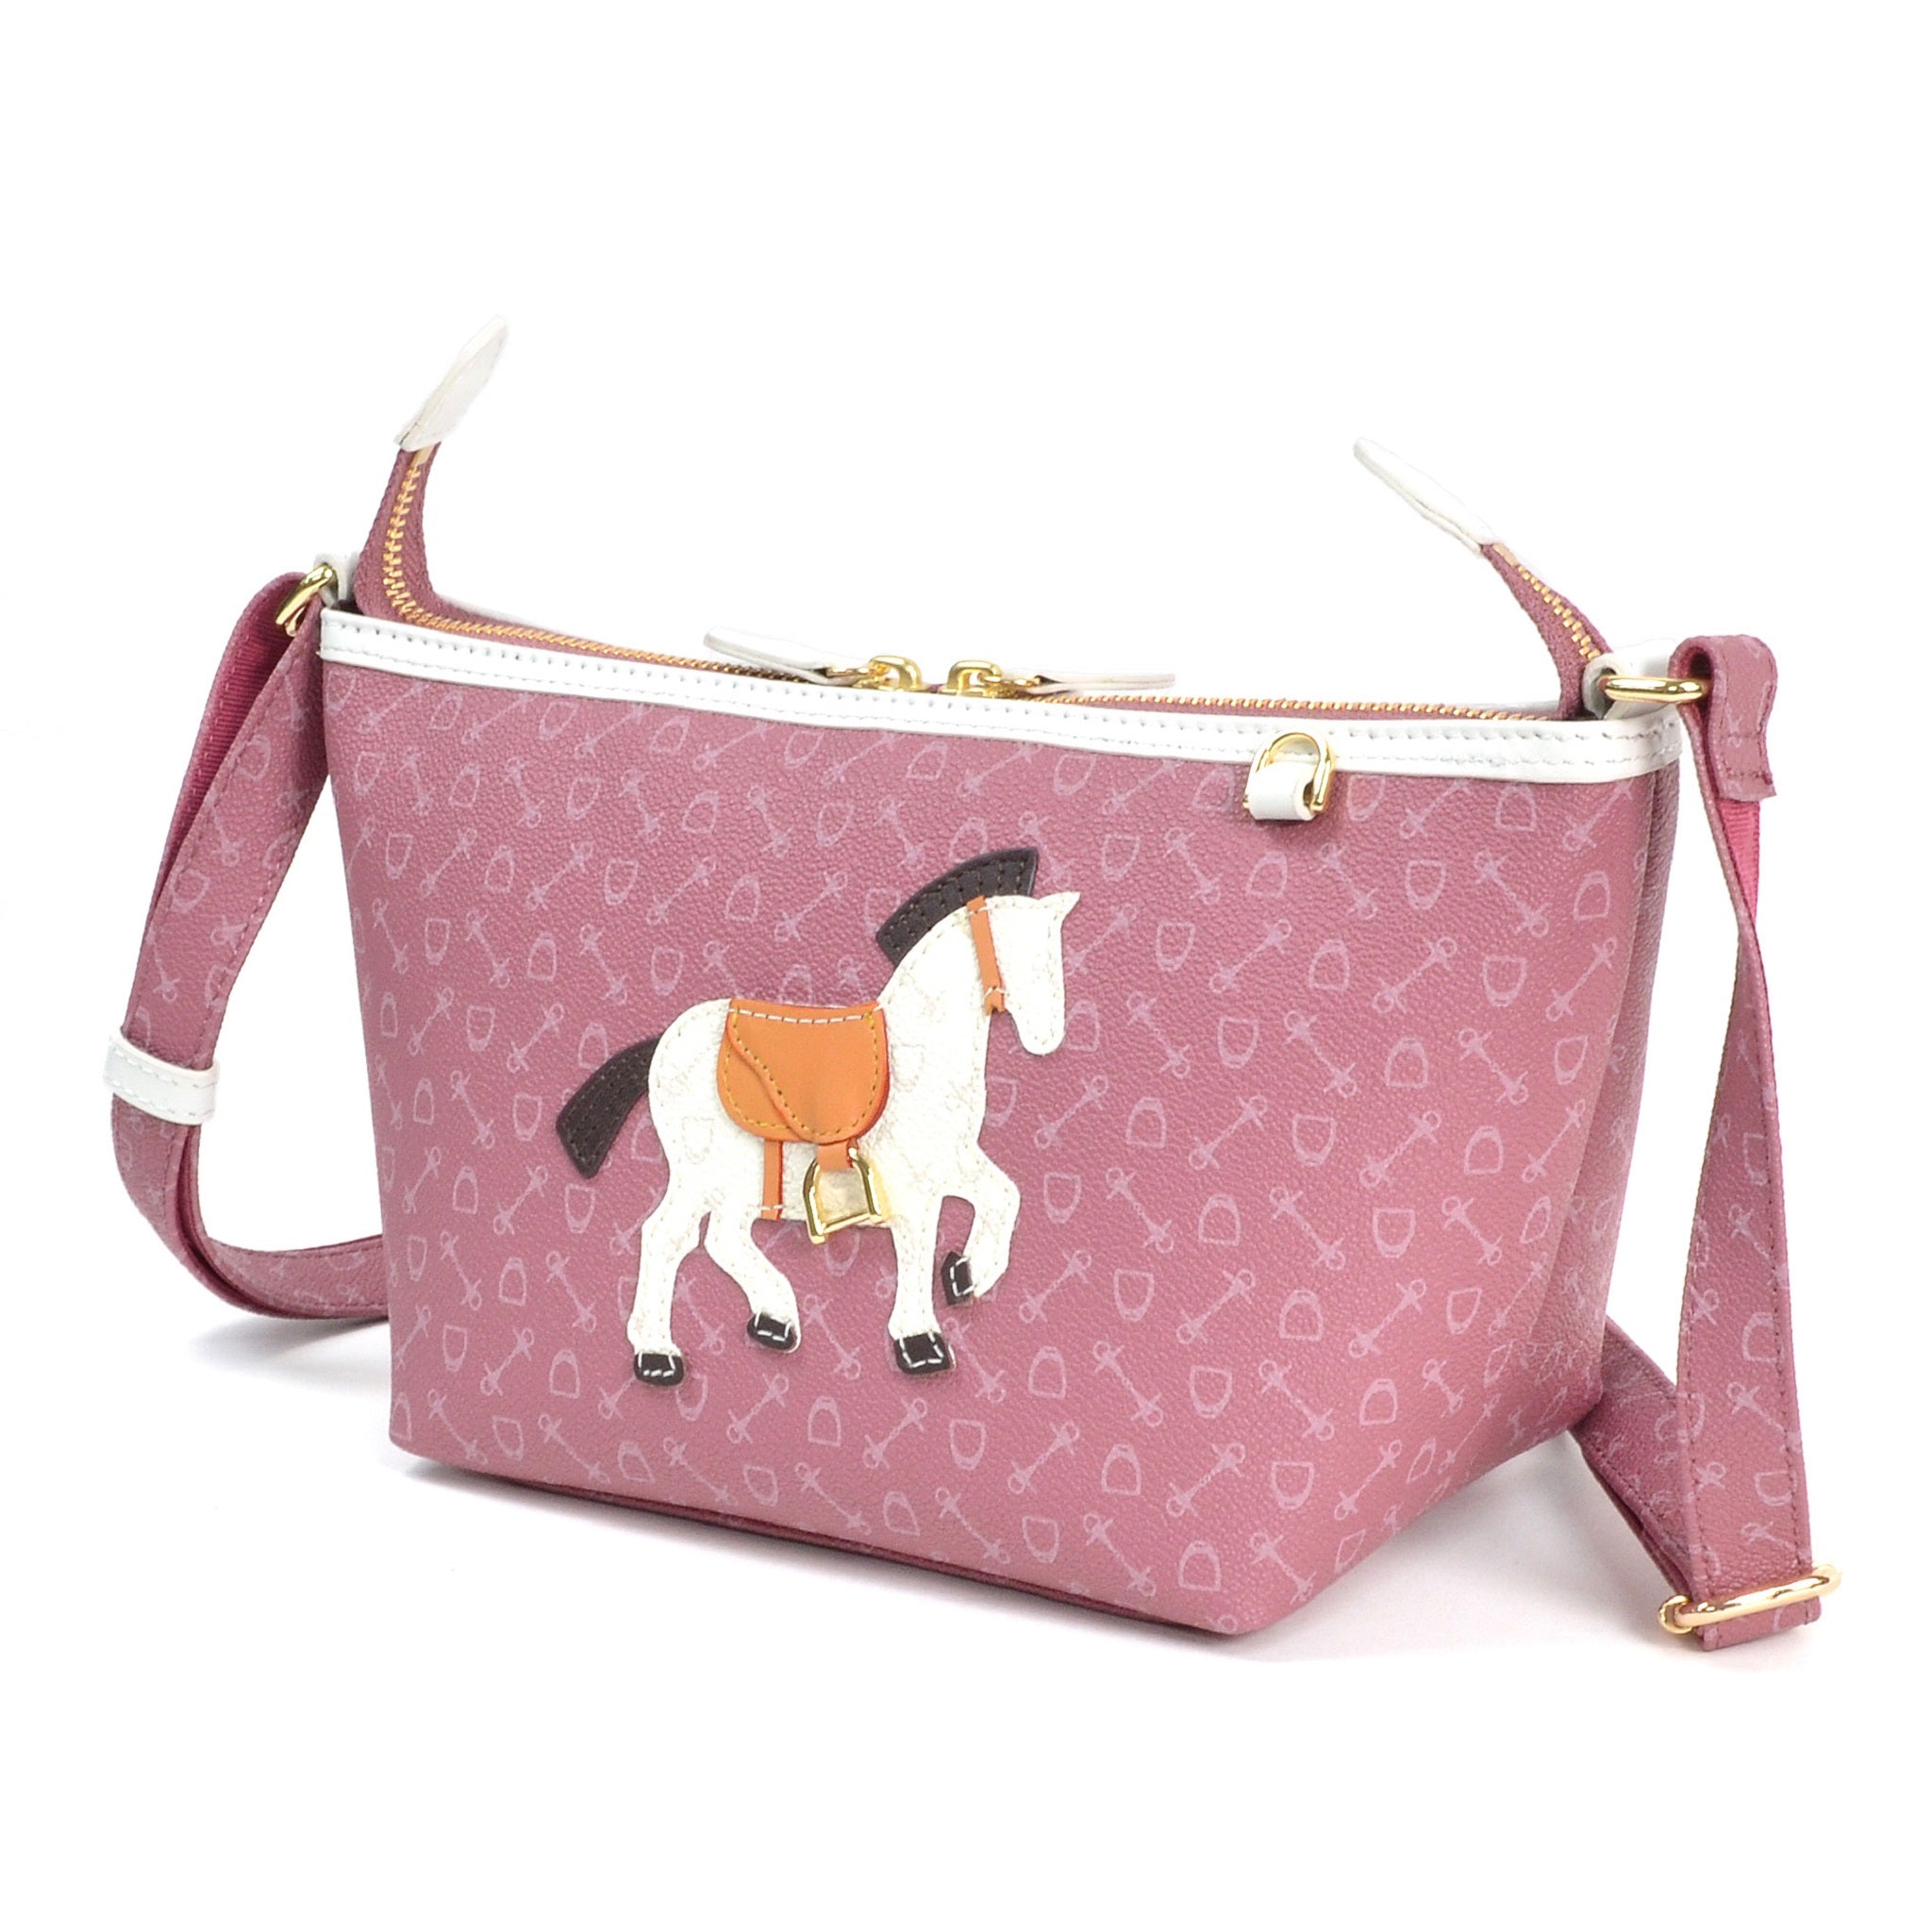 812853 Harness Horse Shoulder Bag